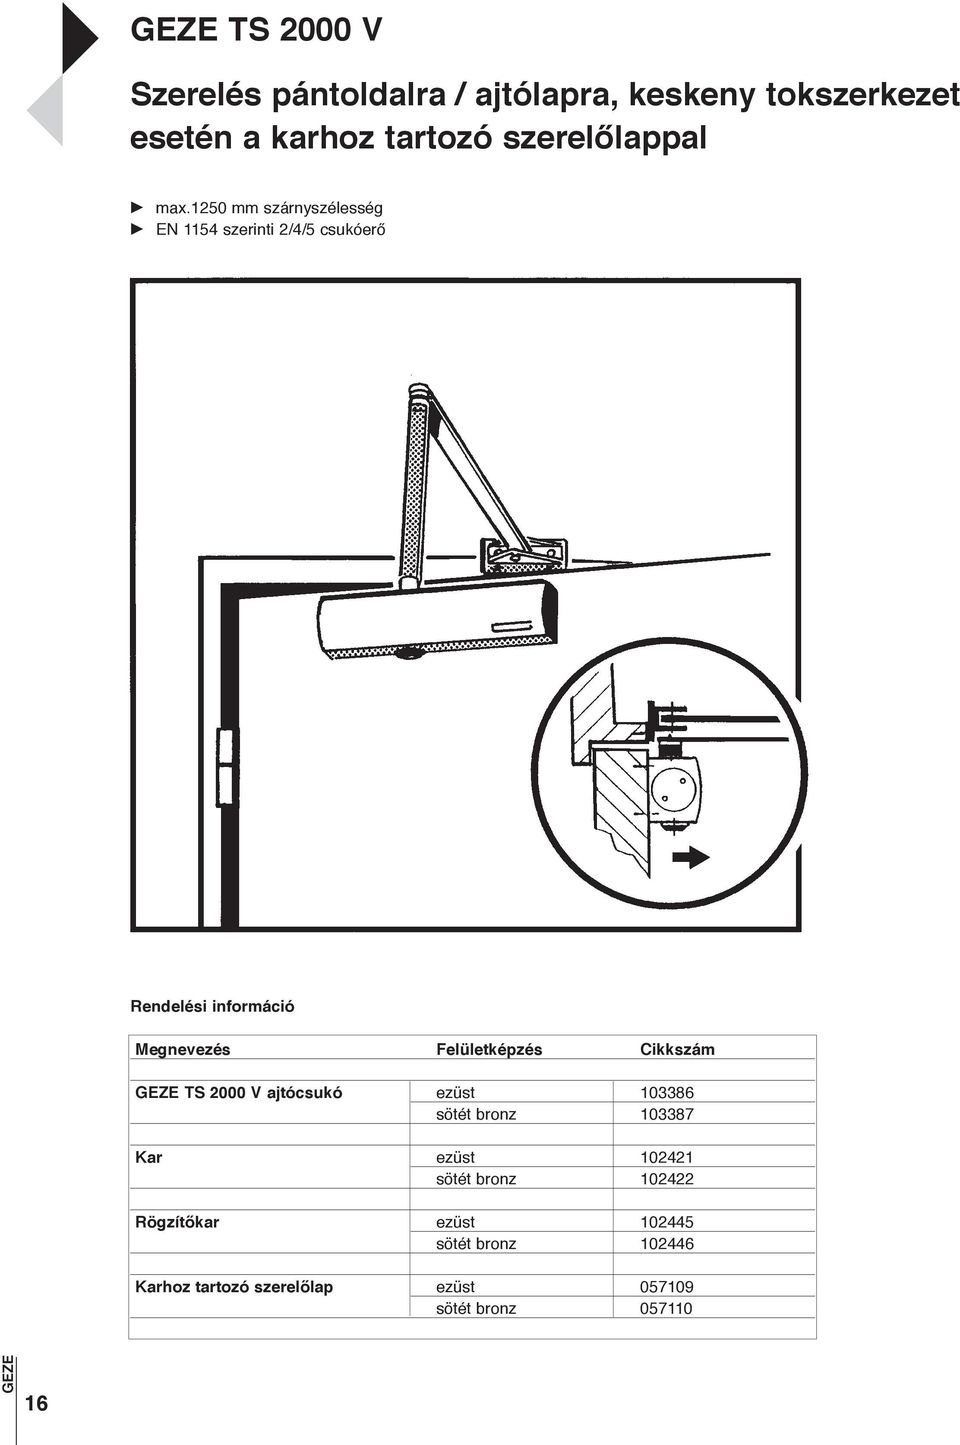 Felső ajtócsukók beépítési lehetőségei - PDF Ingyenes letöltés